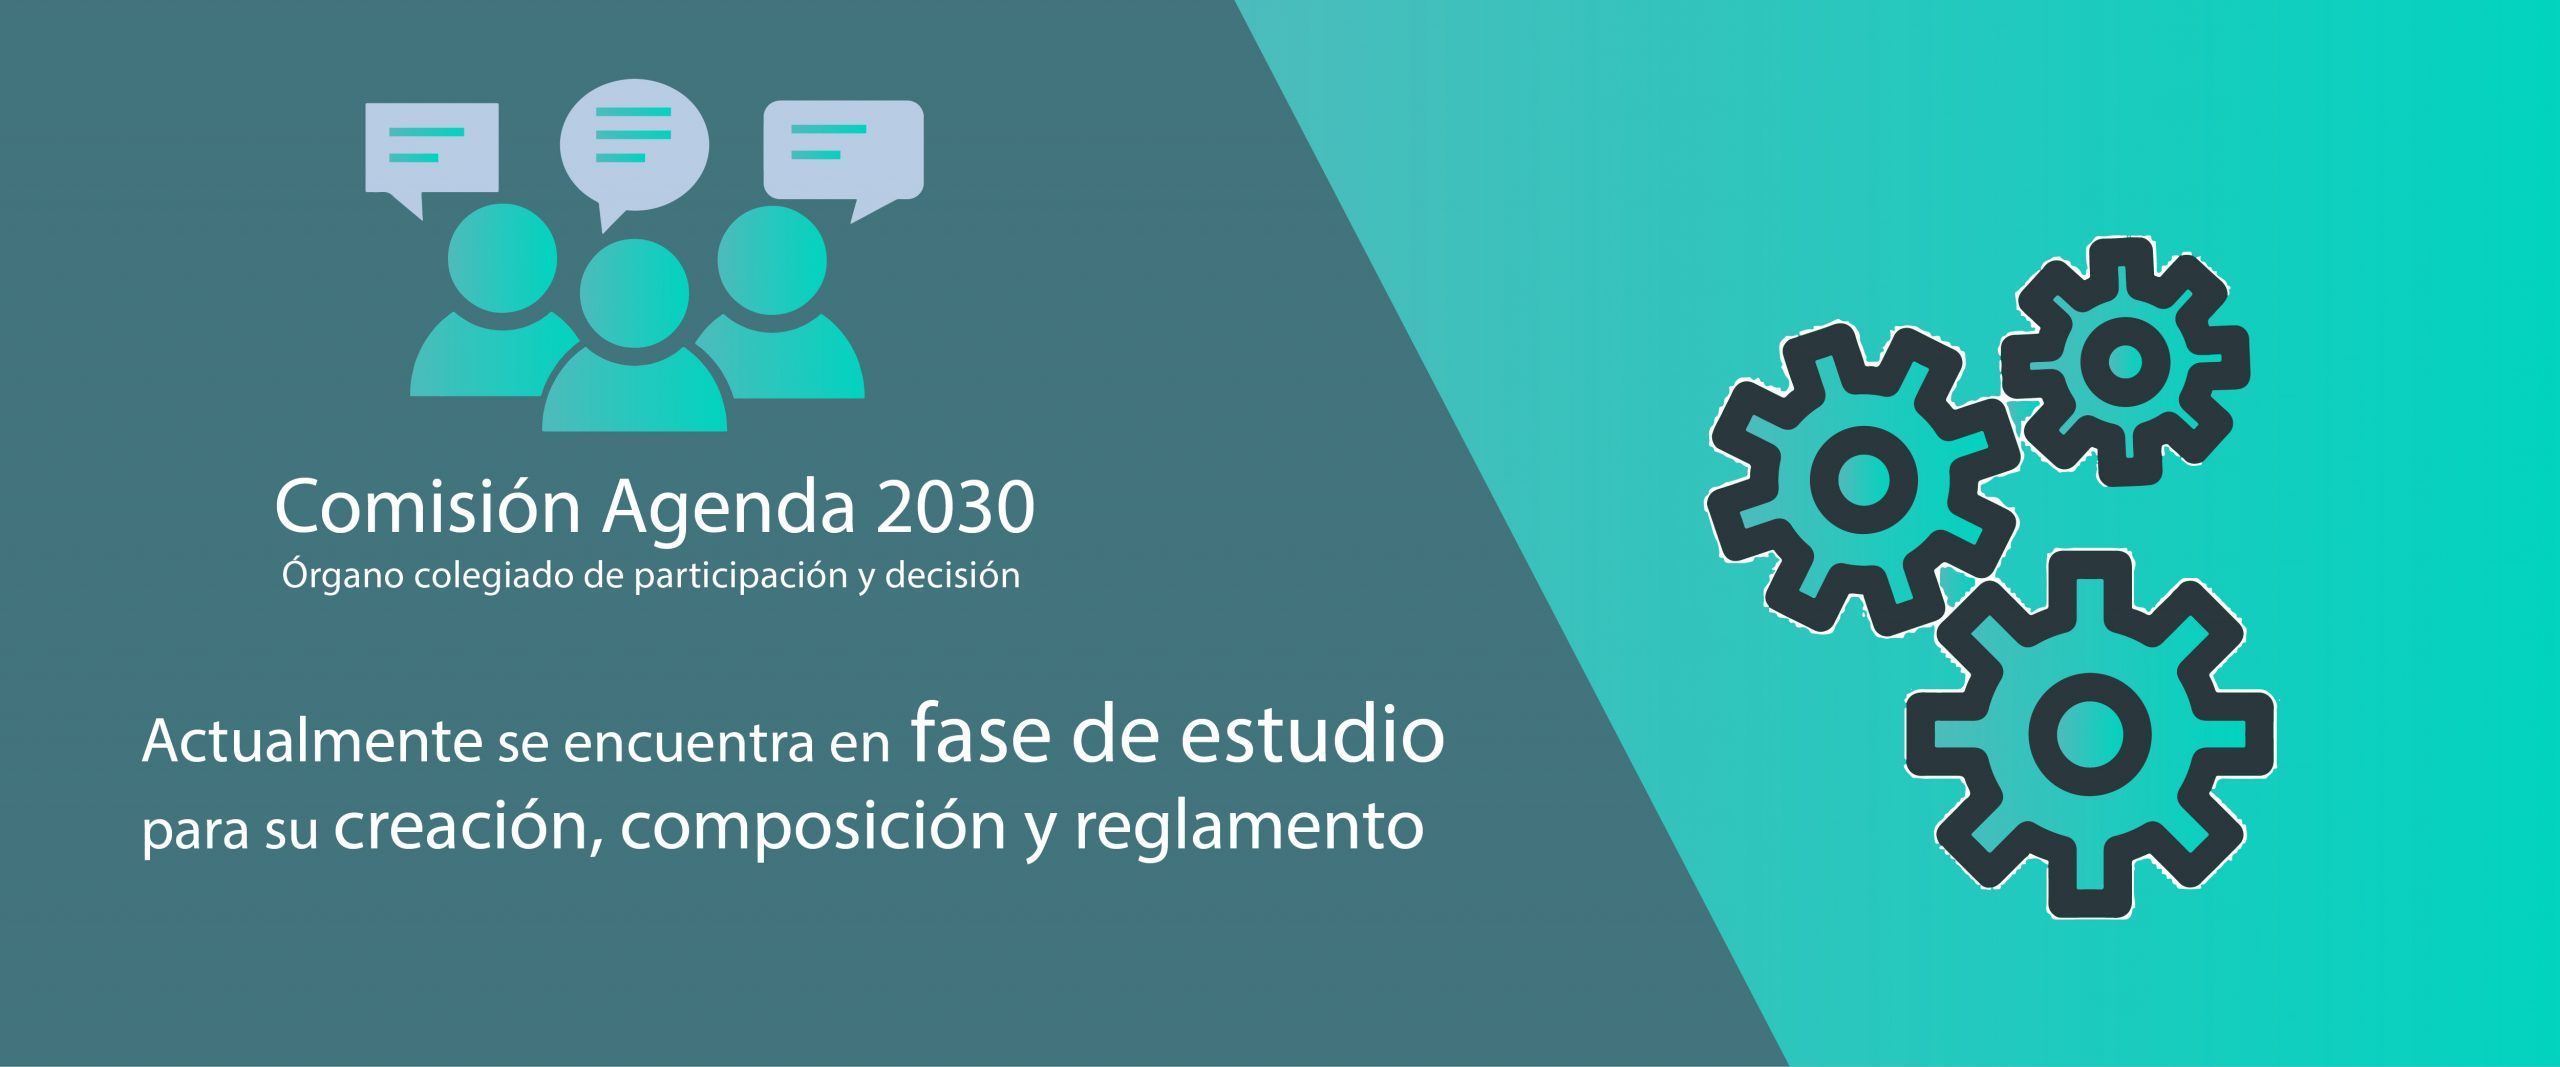 comisión agenda 2030